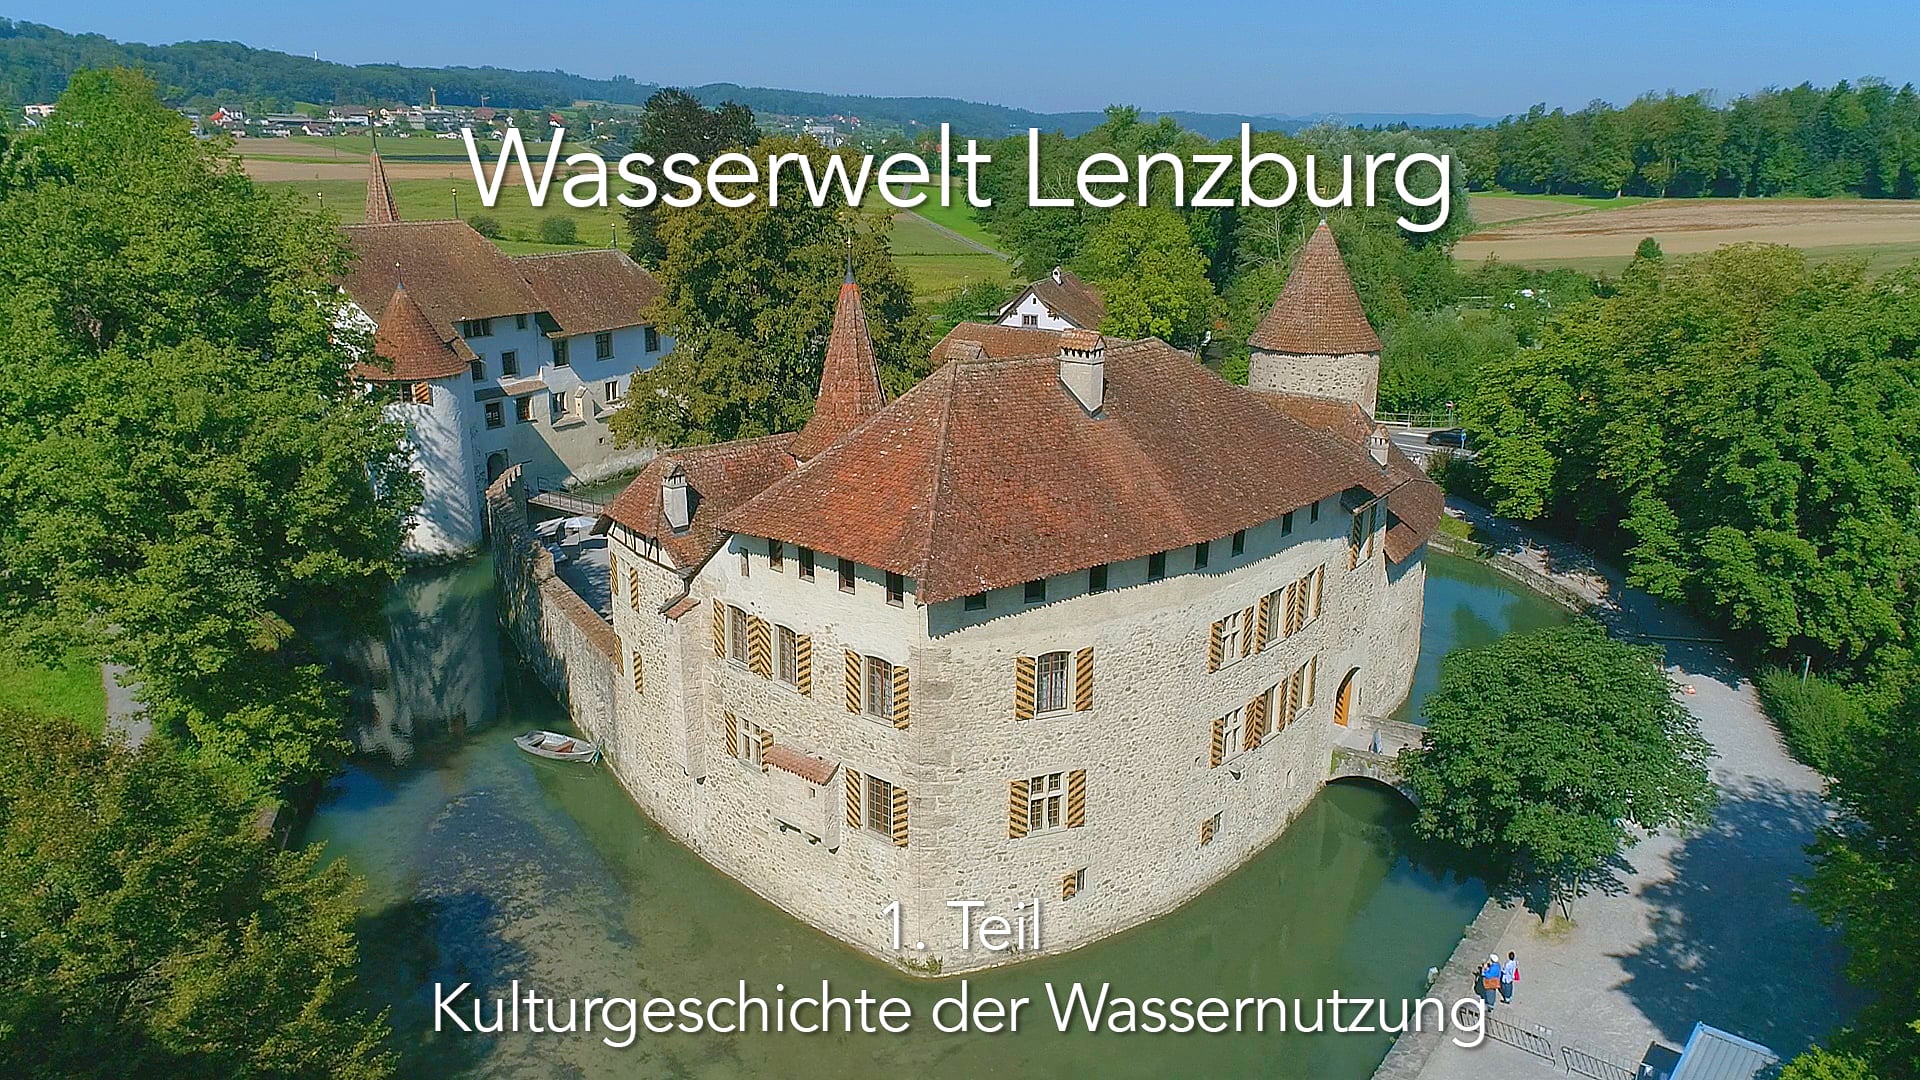 Wasserwelt Lenzburg | 1. Teil: "Kulturgeschichte der Wassernutzung"